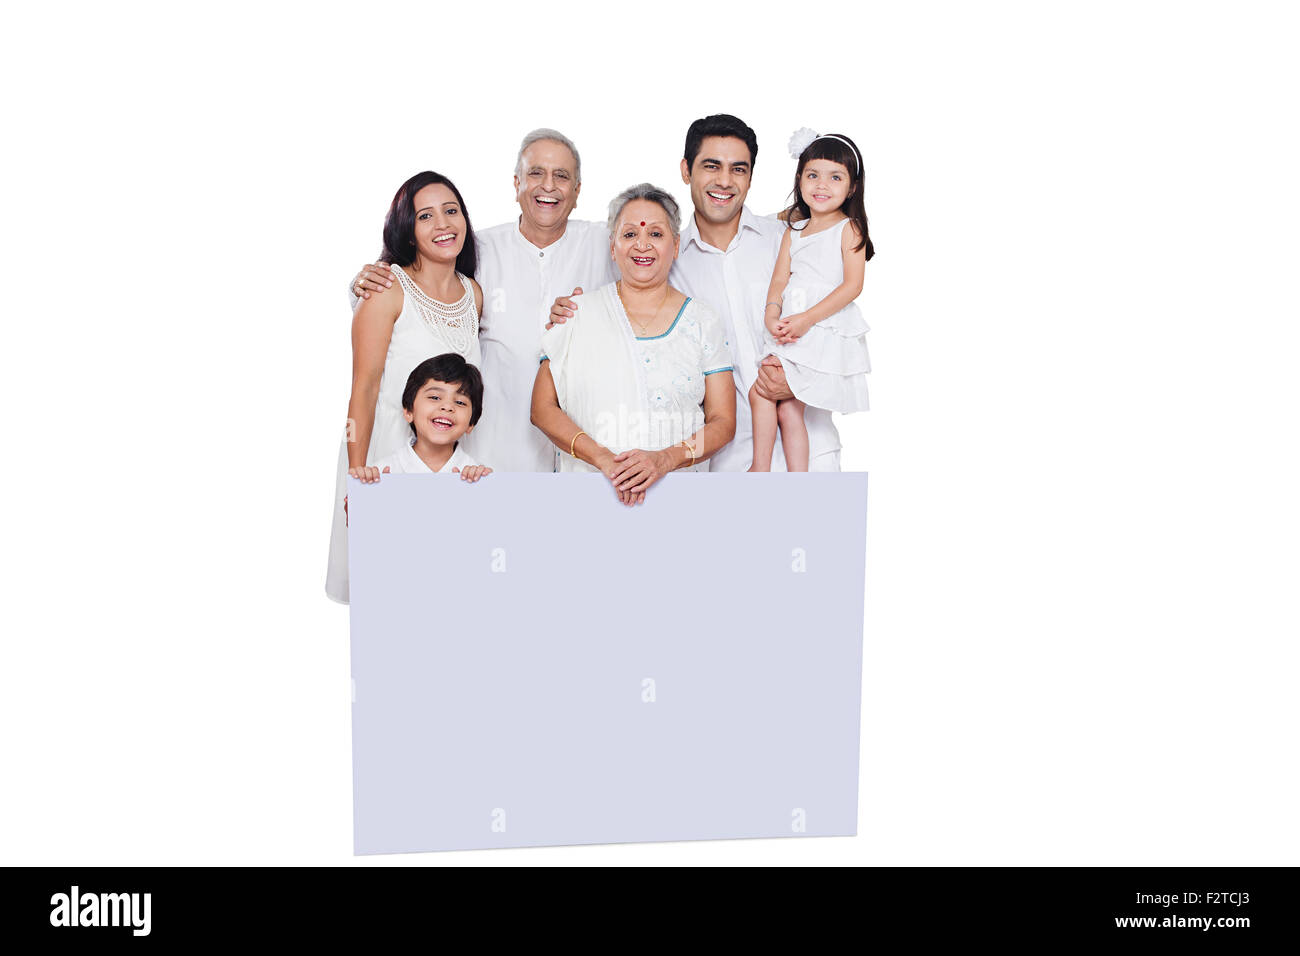 indische Gruppe gemeinsame Familie Message Board anzeigen Stockfoto